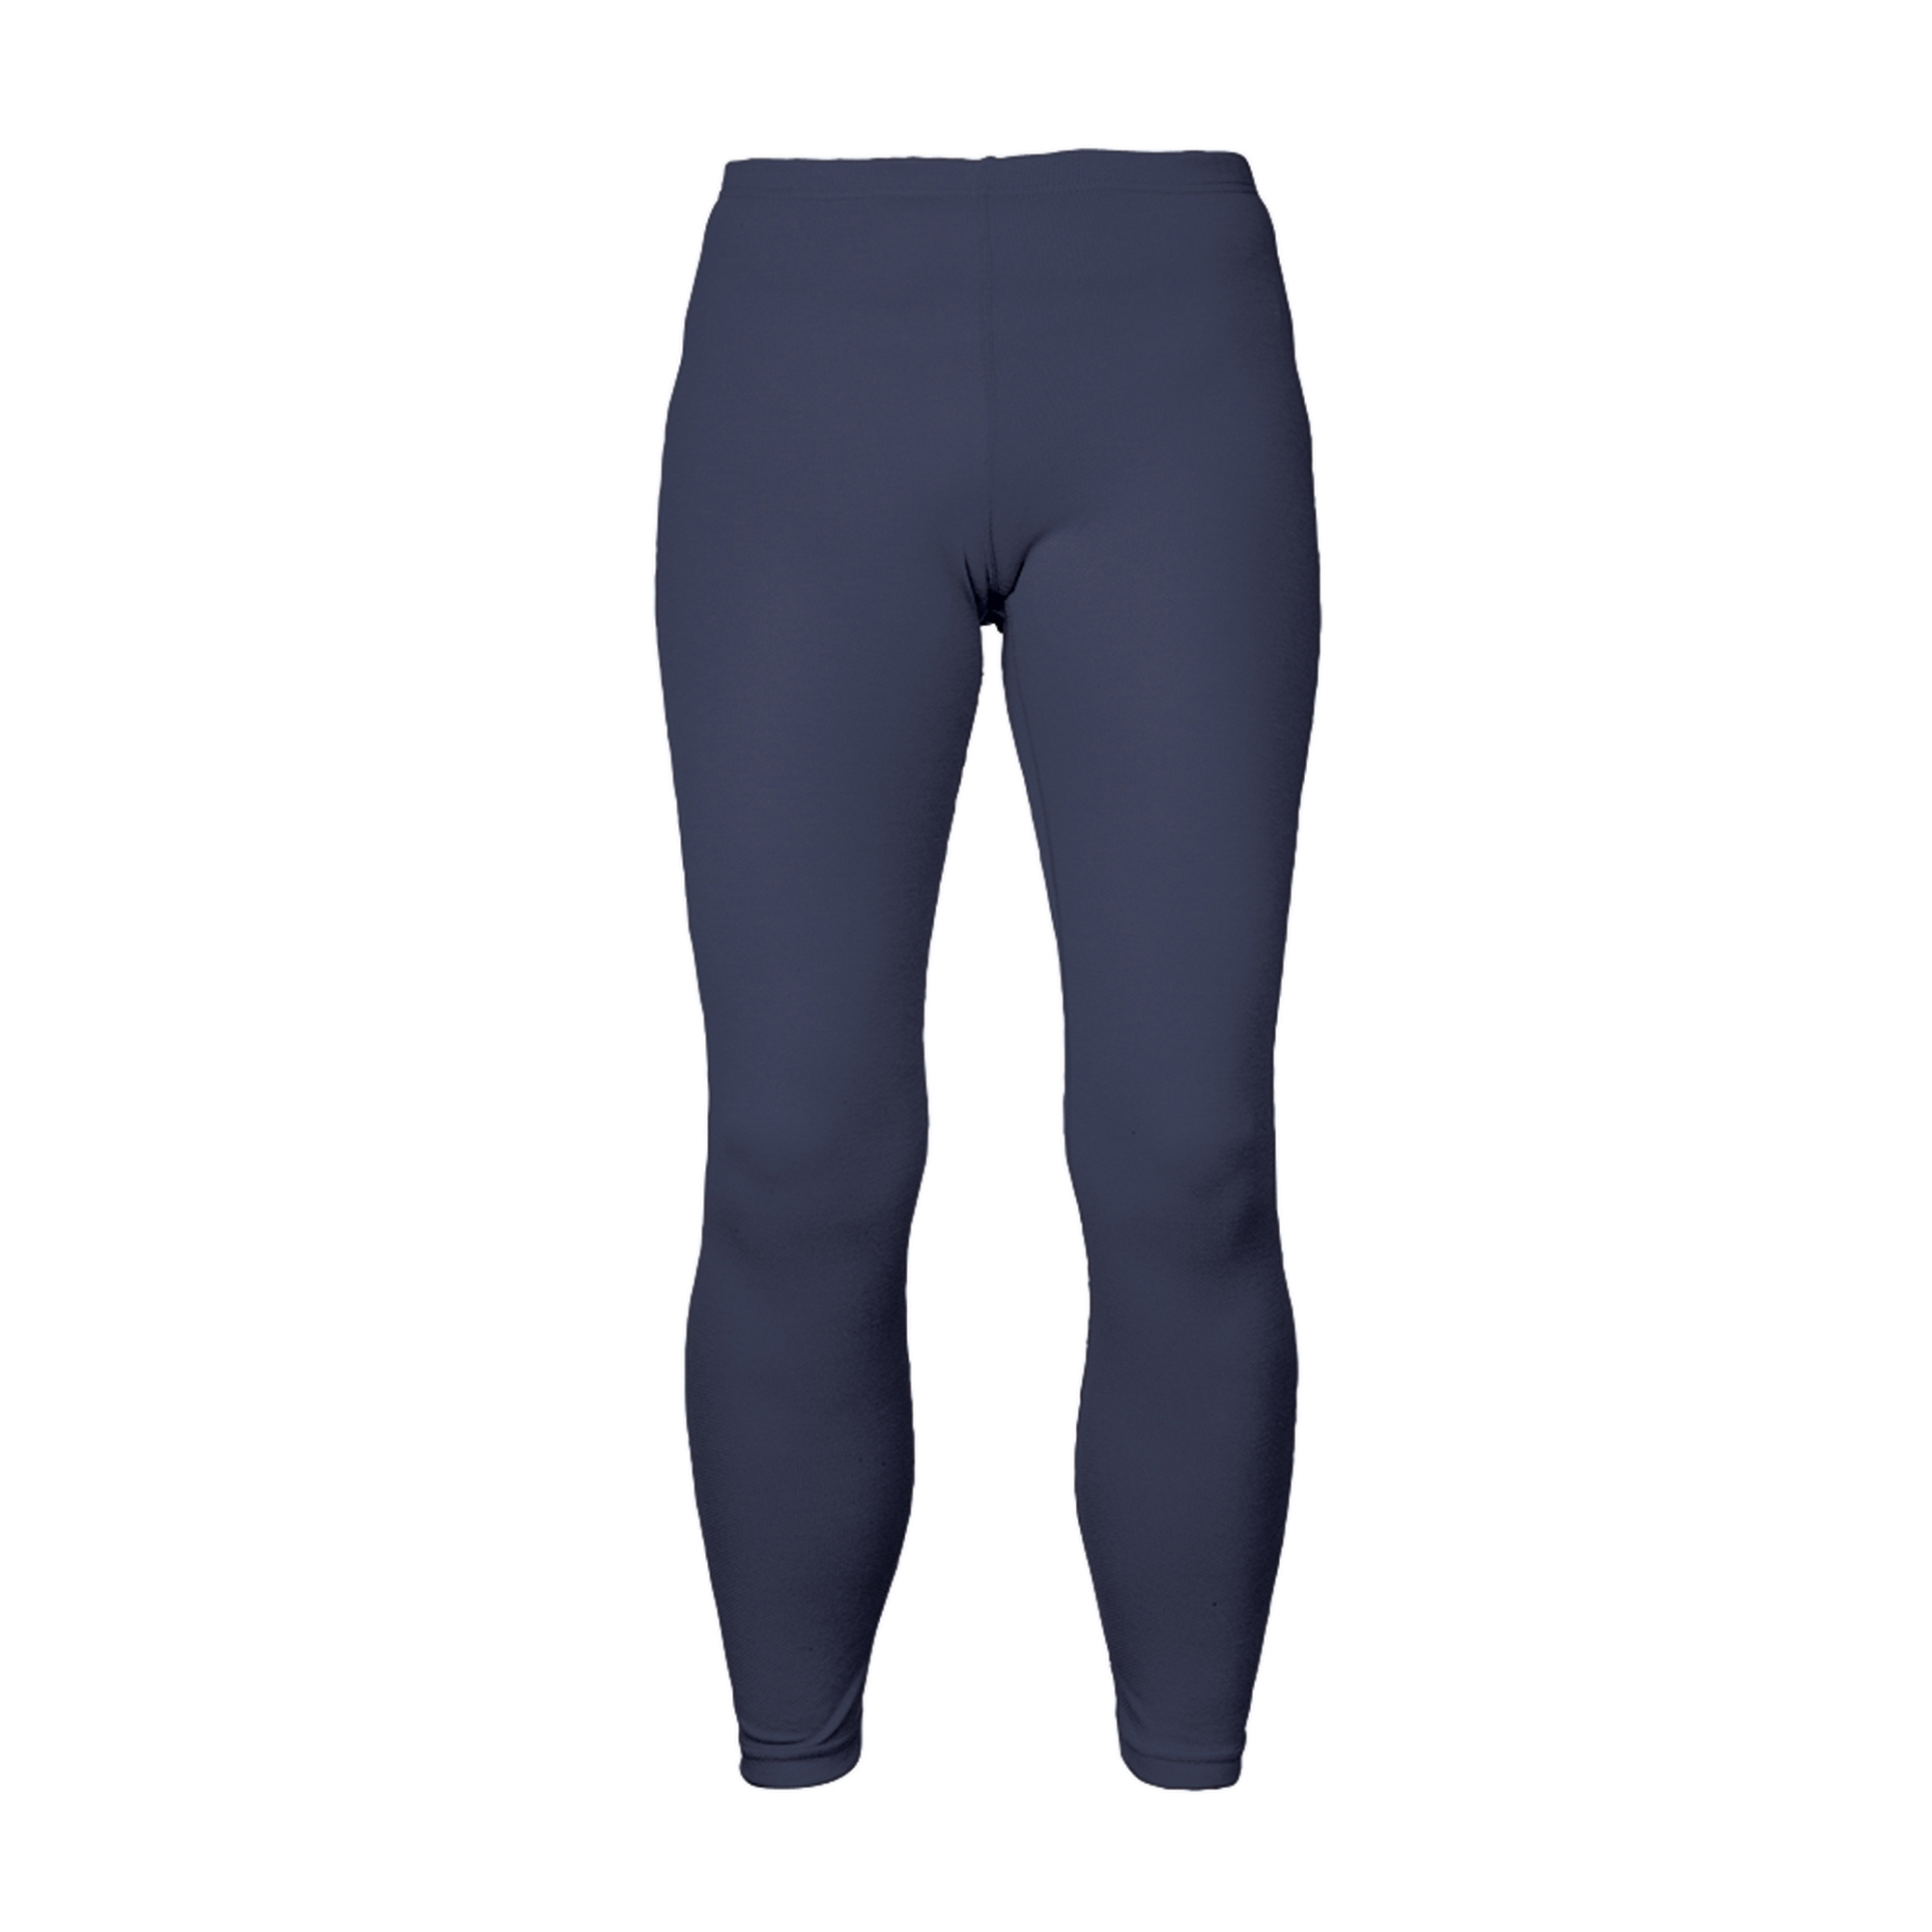 womens navy blue thermal underwear